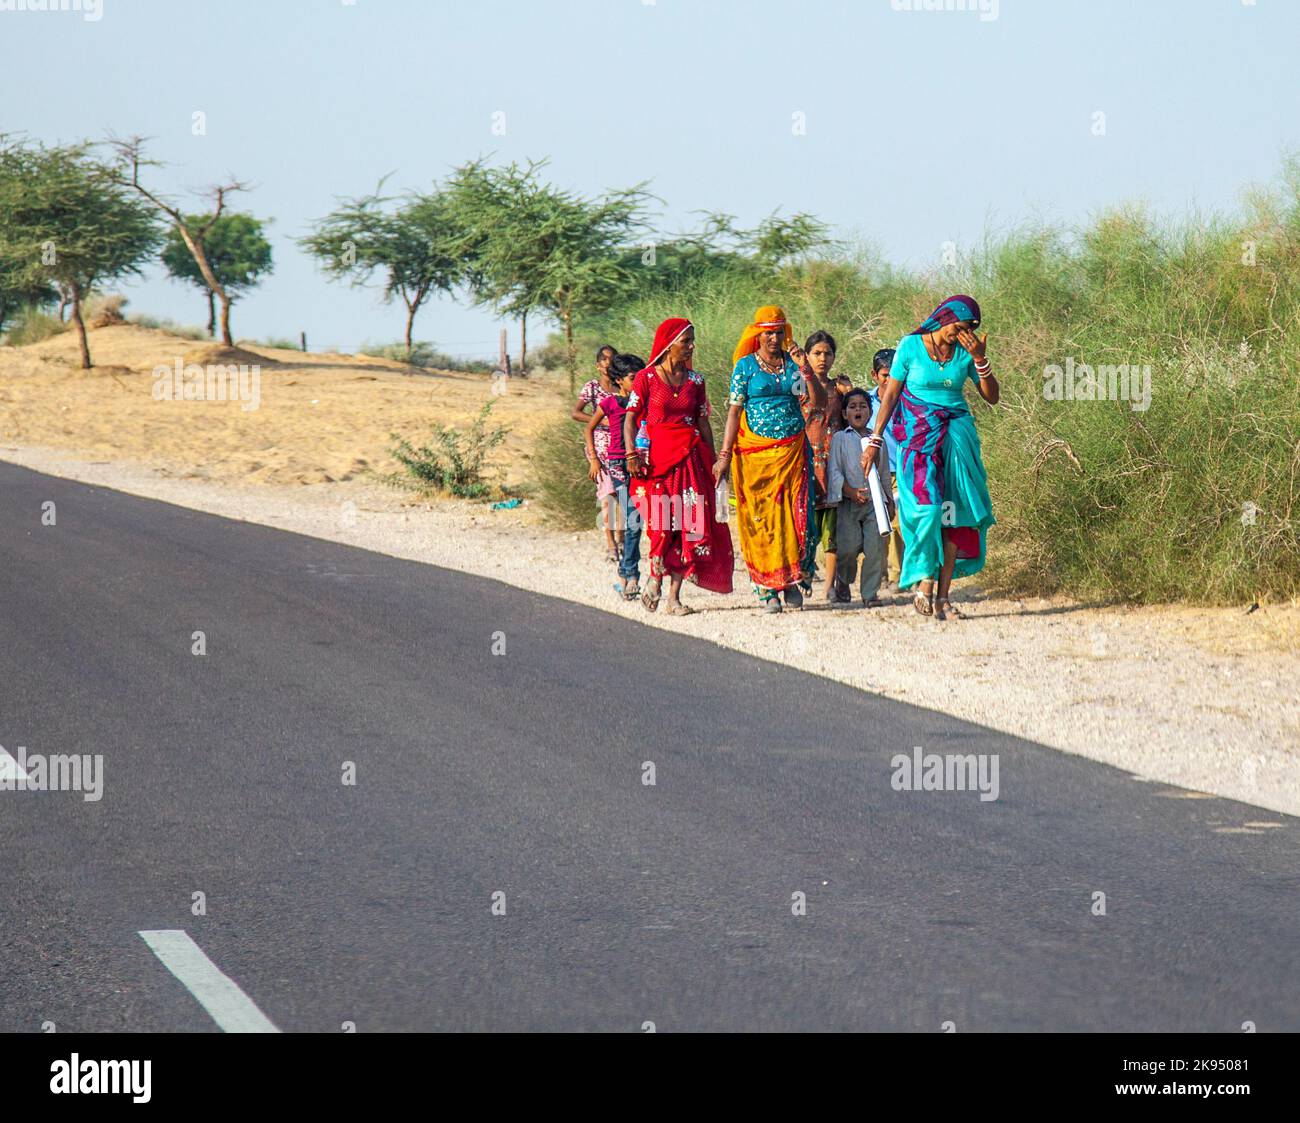 RAJASTHAN, INDIEN - 23. OKTOBER: Unbekannte Mädchen gehen am 23. Oktober 2012 zur Pushkar-Messe in Rajasthan, Indien. Pilger und Kamelhändler strömen Stockfoto